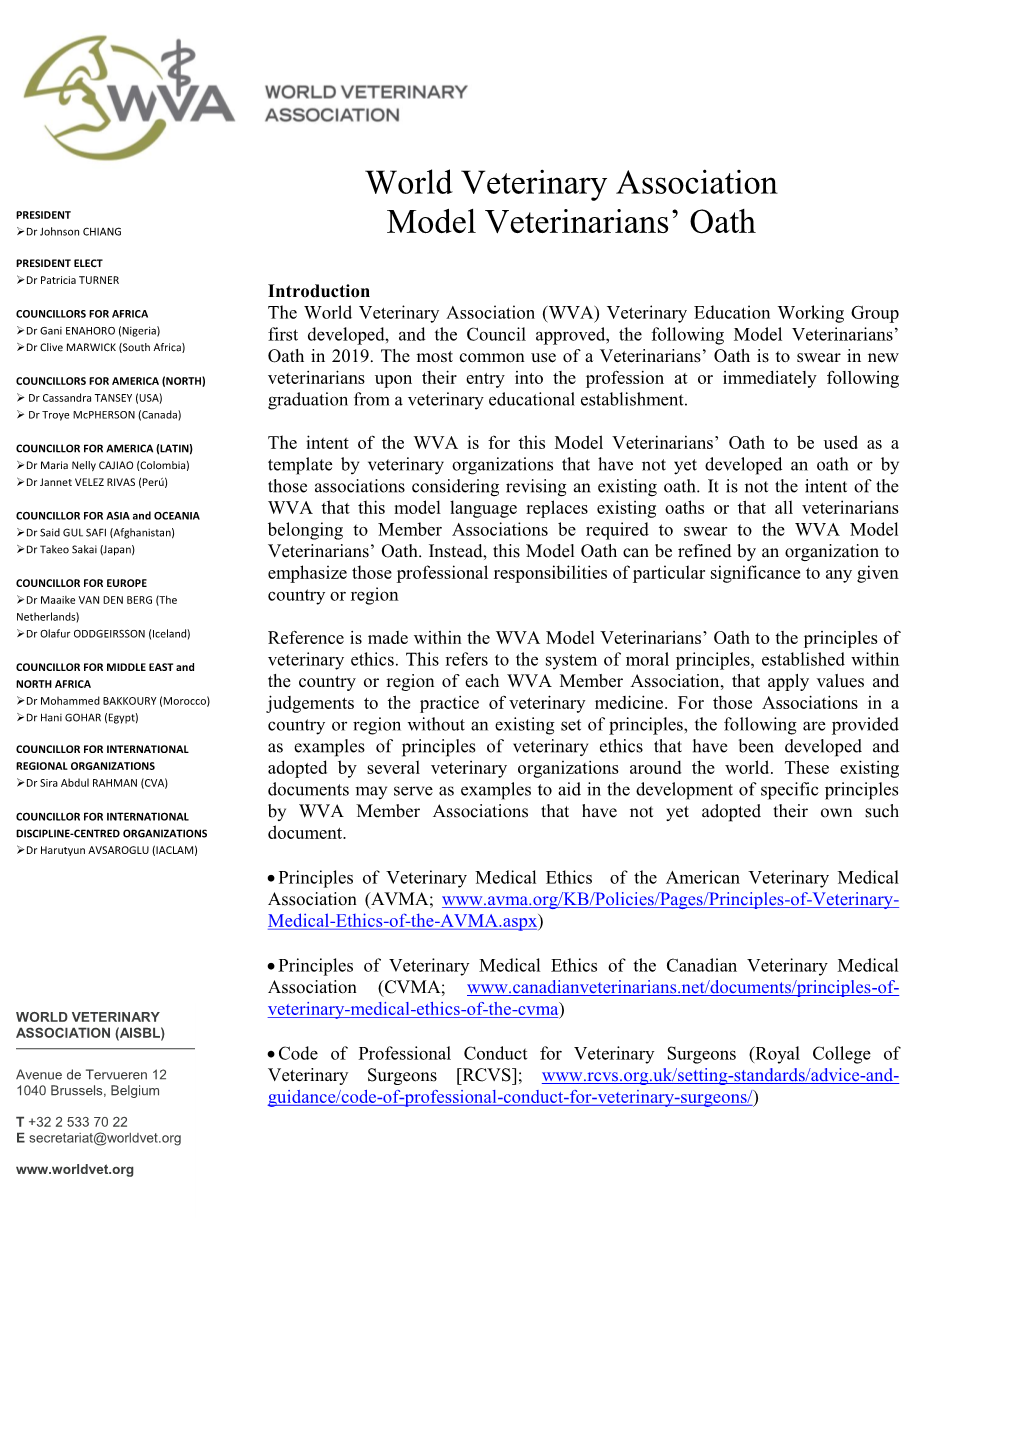 World Veterinary Association Model Veterinarians' Oath